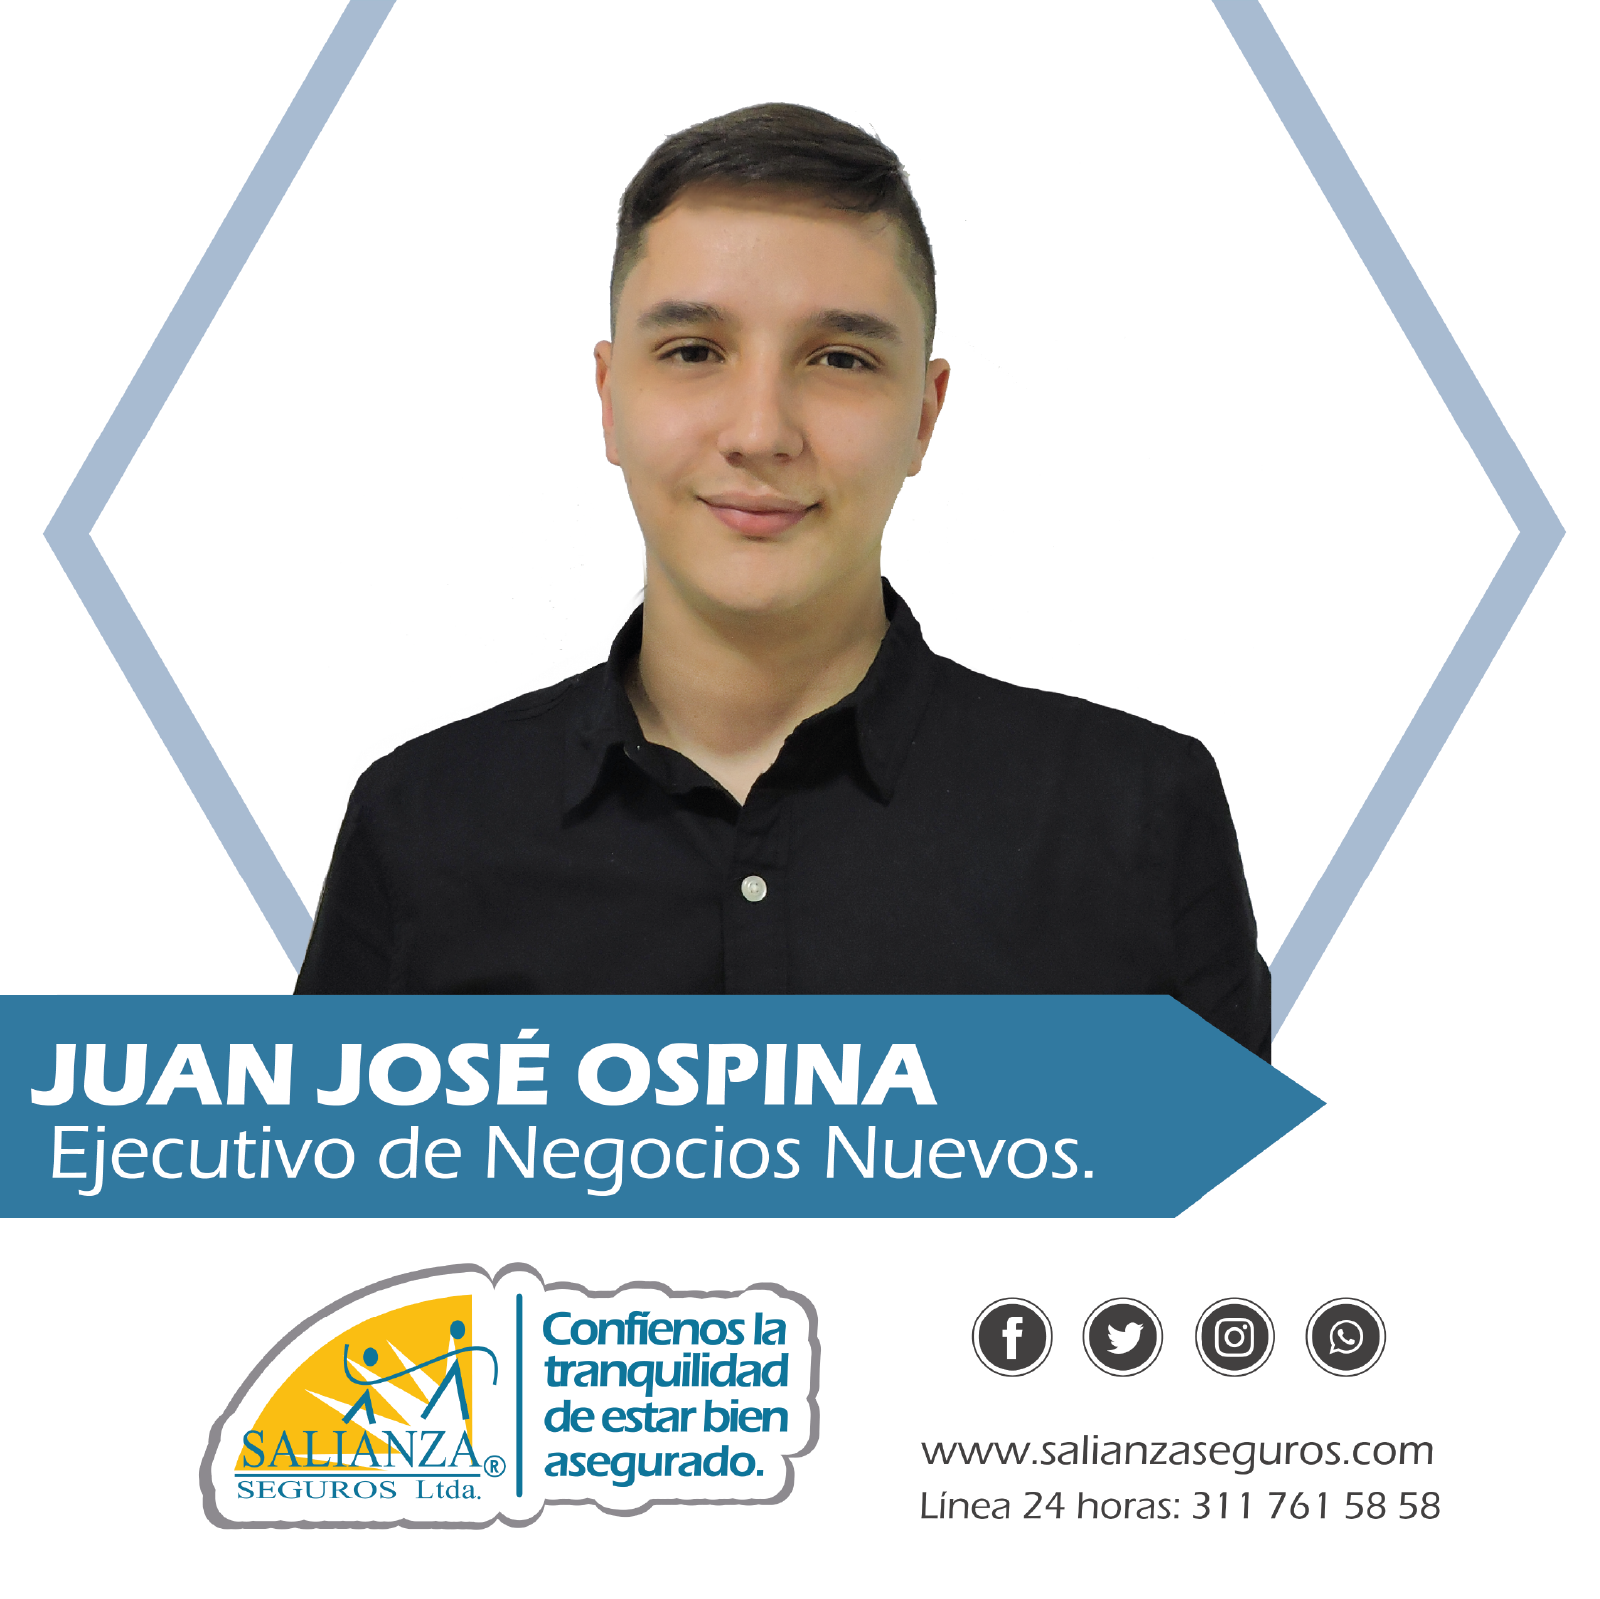 Juan Jose Ospina